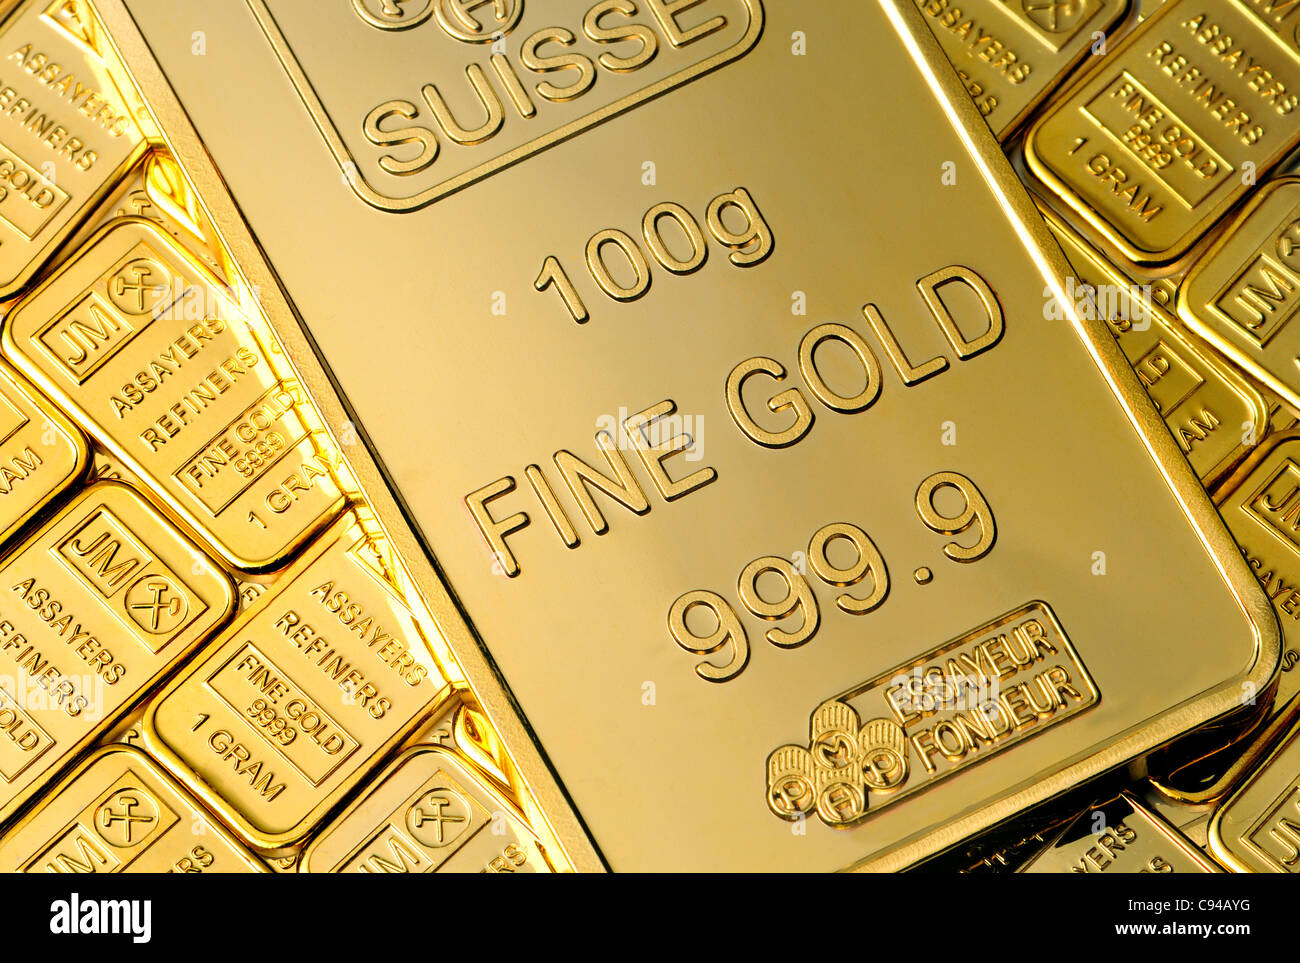 Gold Bullion en 100g et 1g bars / lingots (répliques) plaqué or Banque D'Images